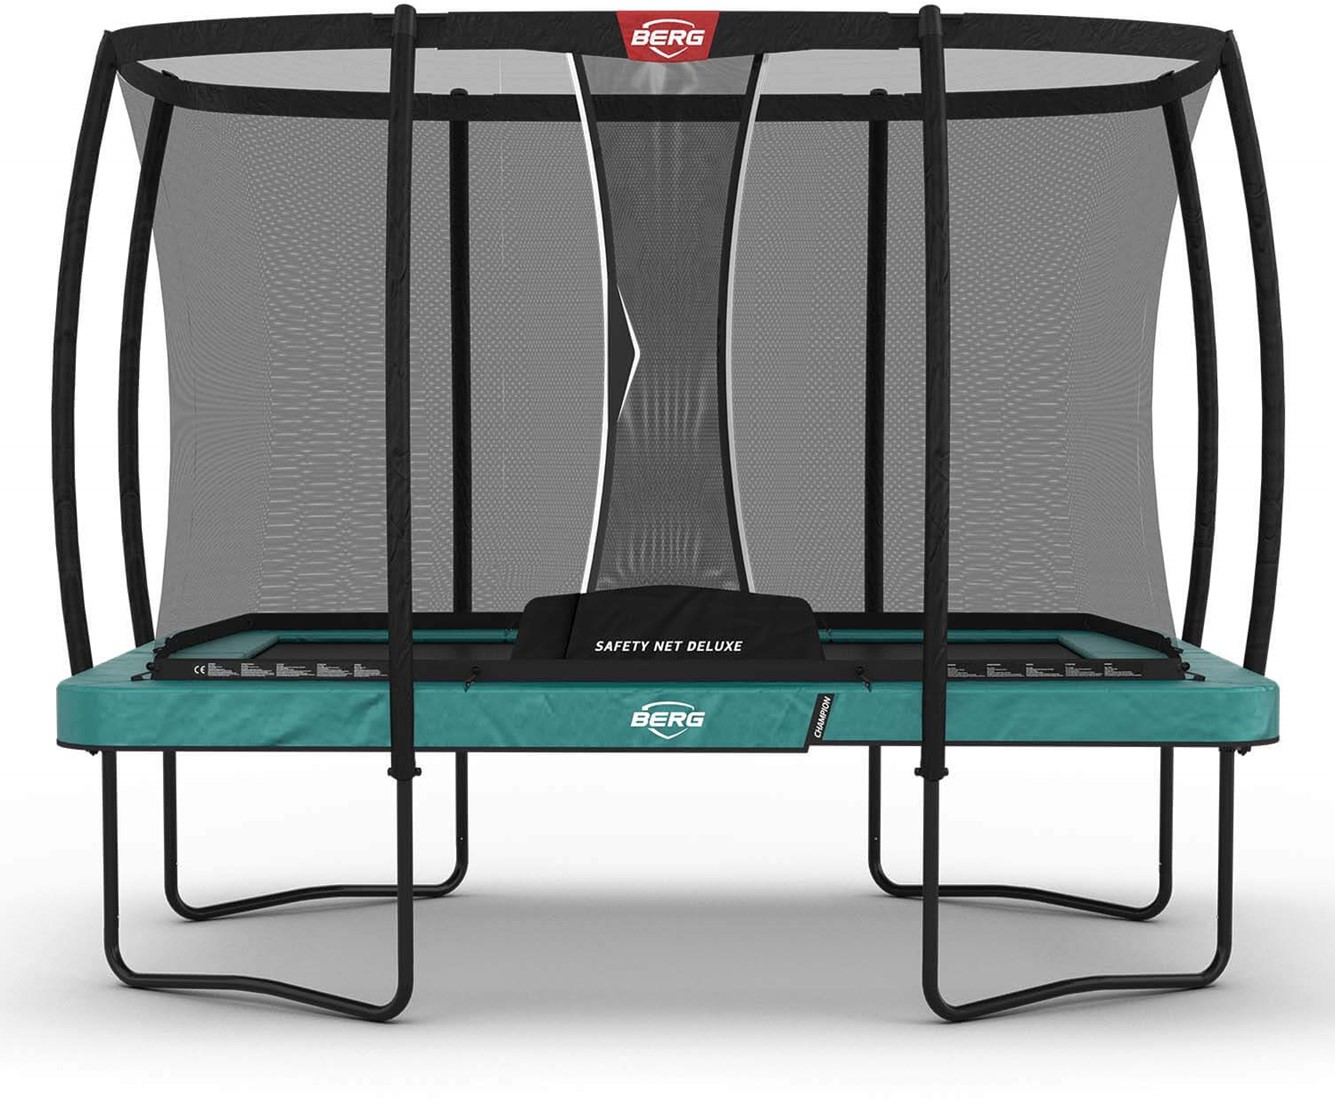 Verkeersopstopping vraag naar is genoeg BERG regular trampoline Ultim Champion, afm. 330 x 220 cm. - veiligheidsnet  DeLuxe - groen bij Buitengoed